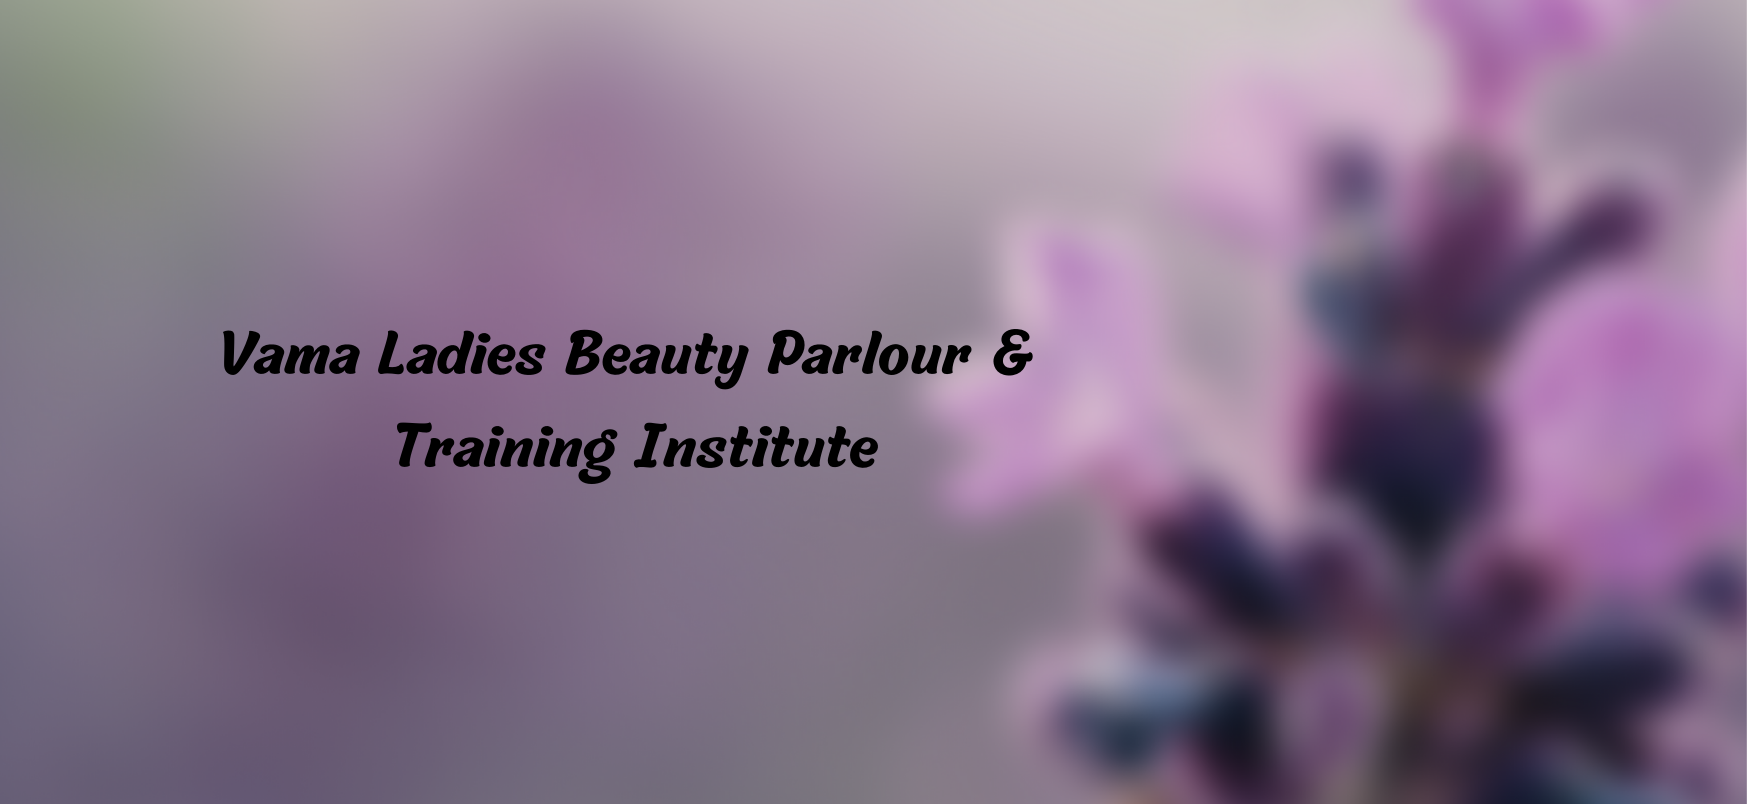 Vama Ladies Beauty Parlour & Training Institute